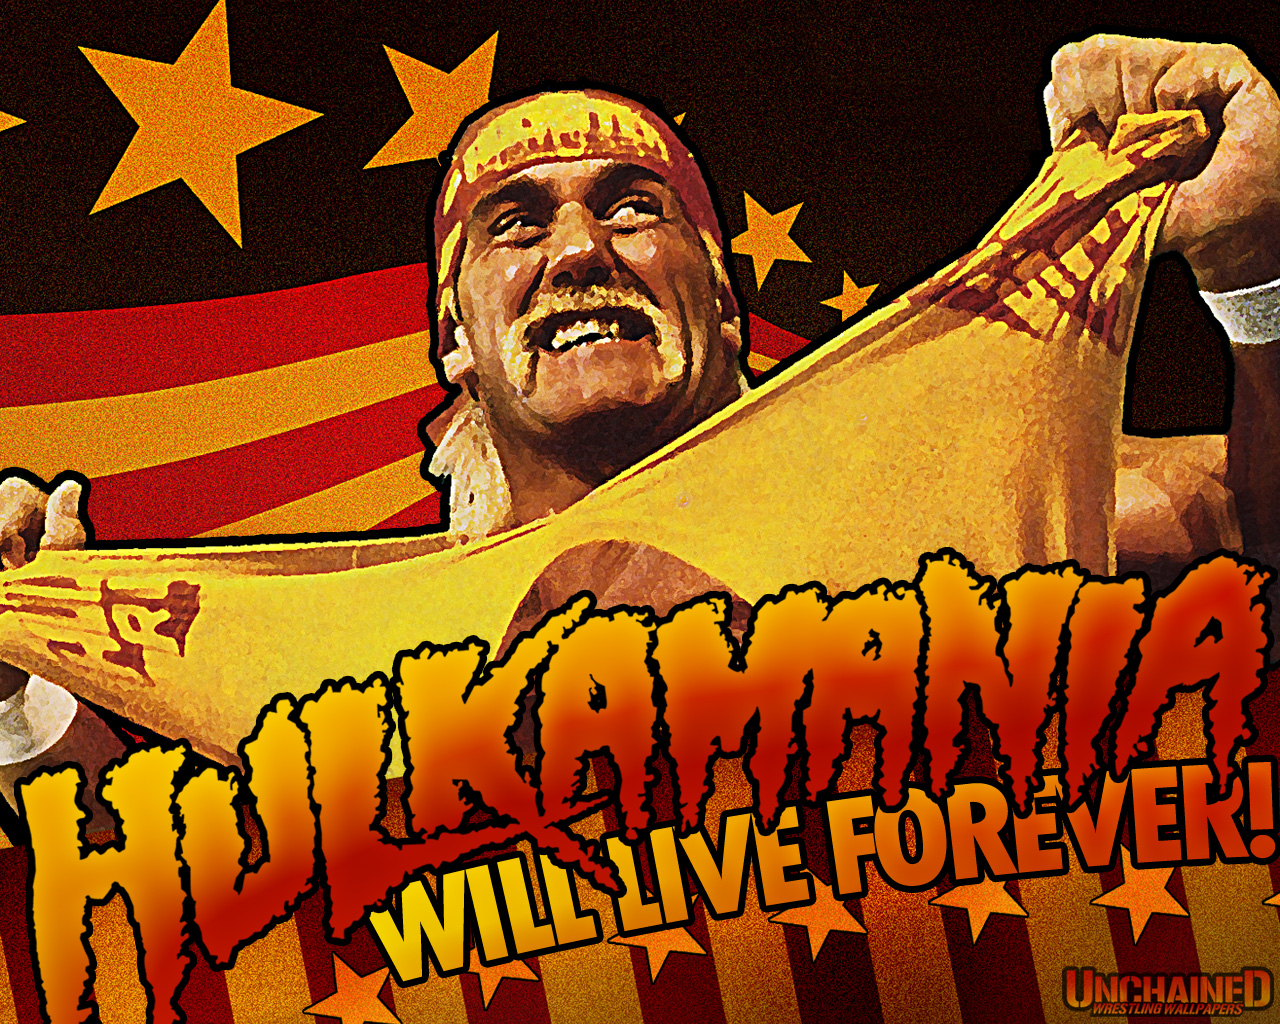 [76+] Hulk Hogan Wallpapers | WallpaperSafari